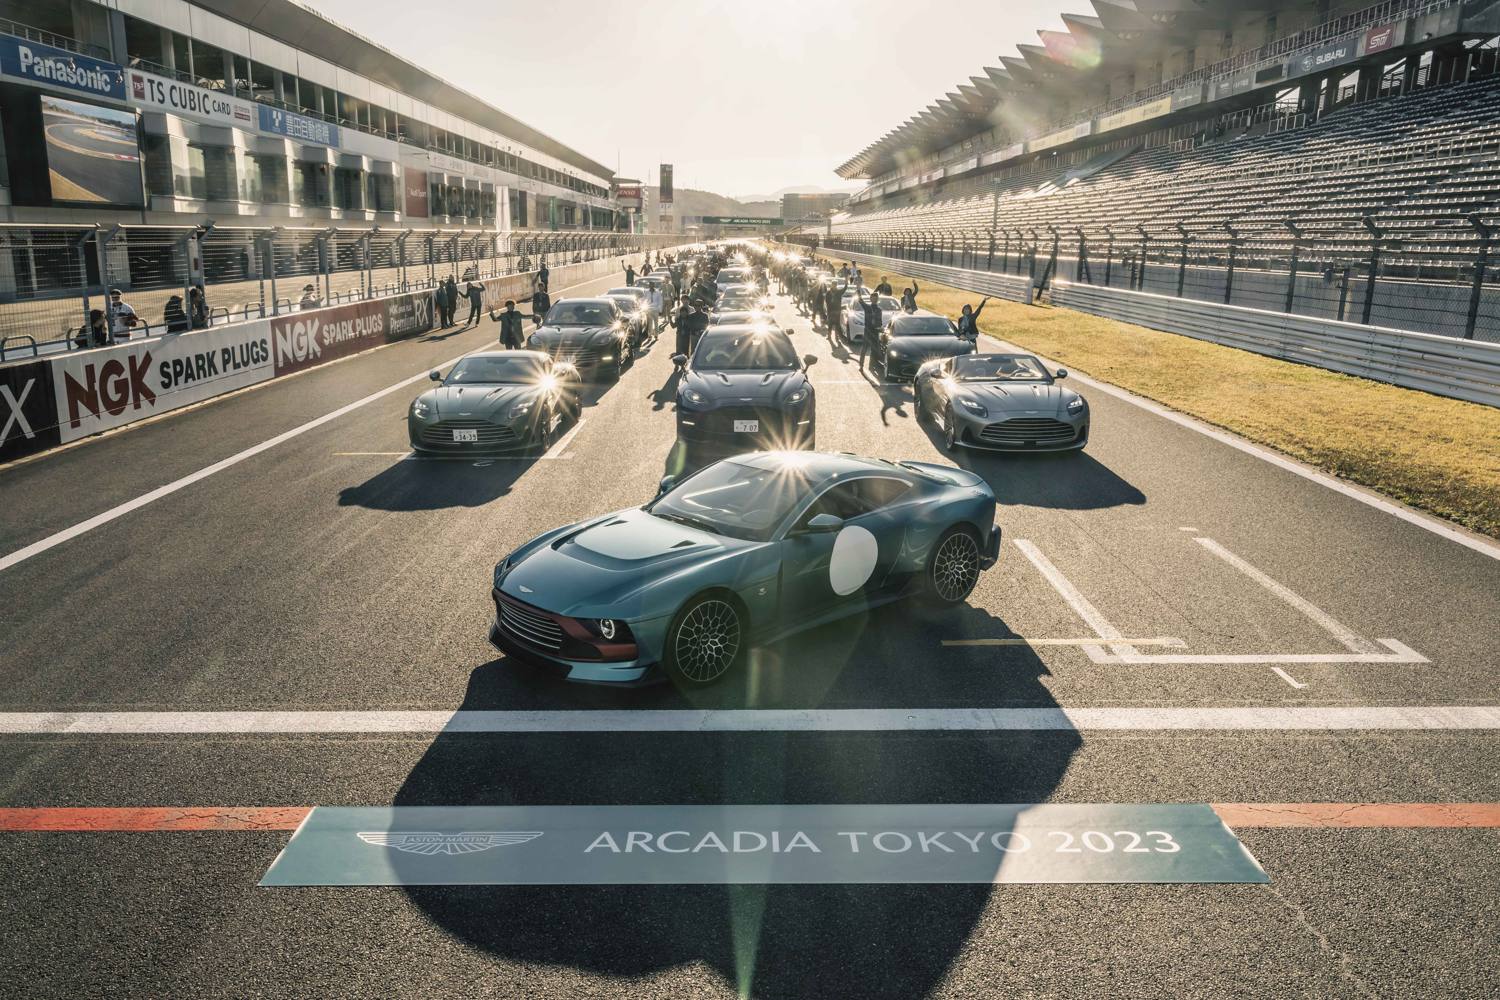 aria-label="Aston Martin Arcadia Japan 20233"